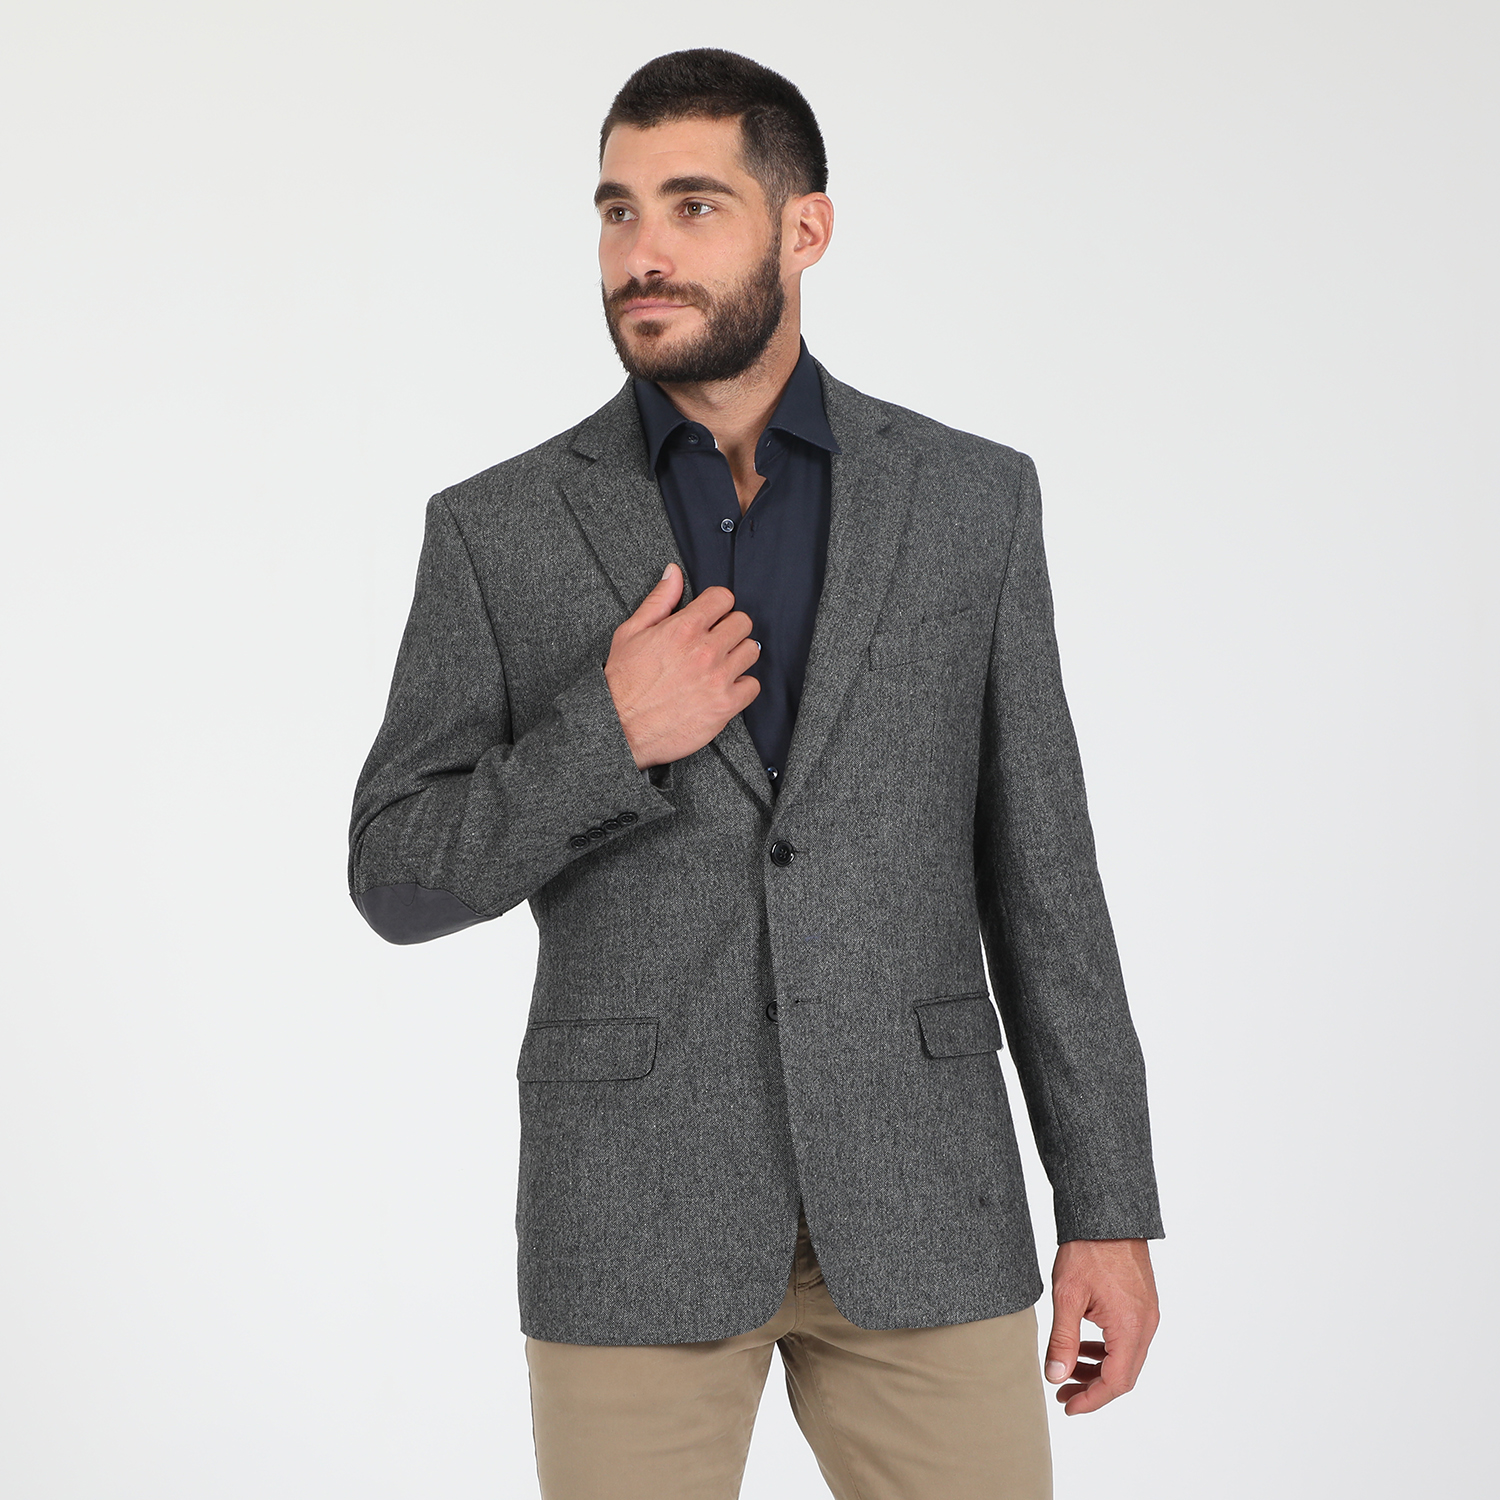 Ανδρικά/Ρούχα/Πανωφόρια/Σακάκια MARTIN & CO - Ανδρικό σακάκι blazer MARTIN & CO REGULAR γκρι